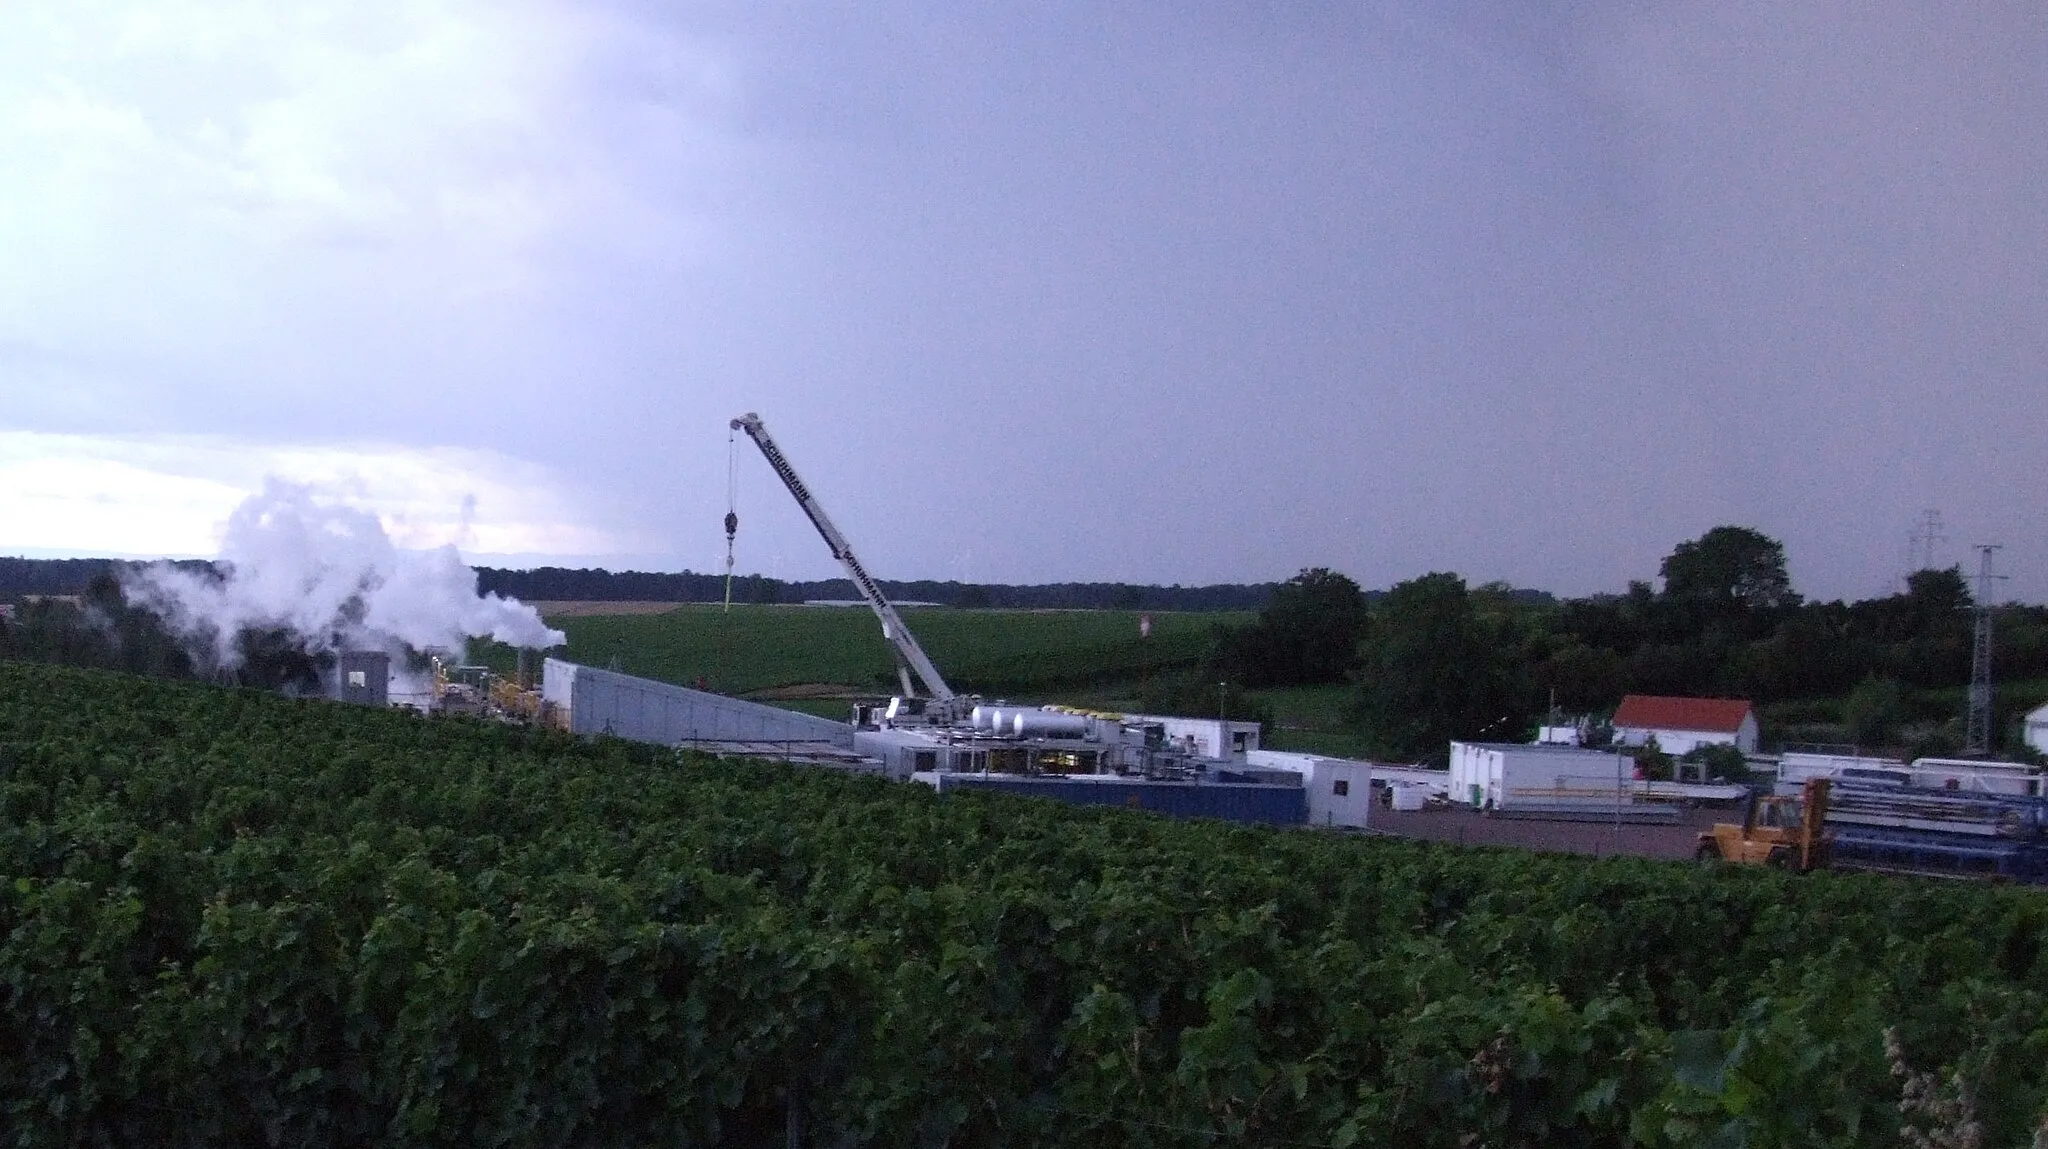 Photo showing: Geothermiebohrung Insheim am 23.7.2009 in den Weinbergen. Aus dem Bohrloch strömt Dampf und heißes salzhaltiges Wasser